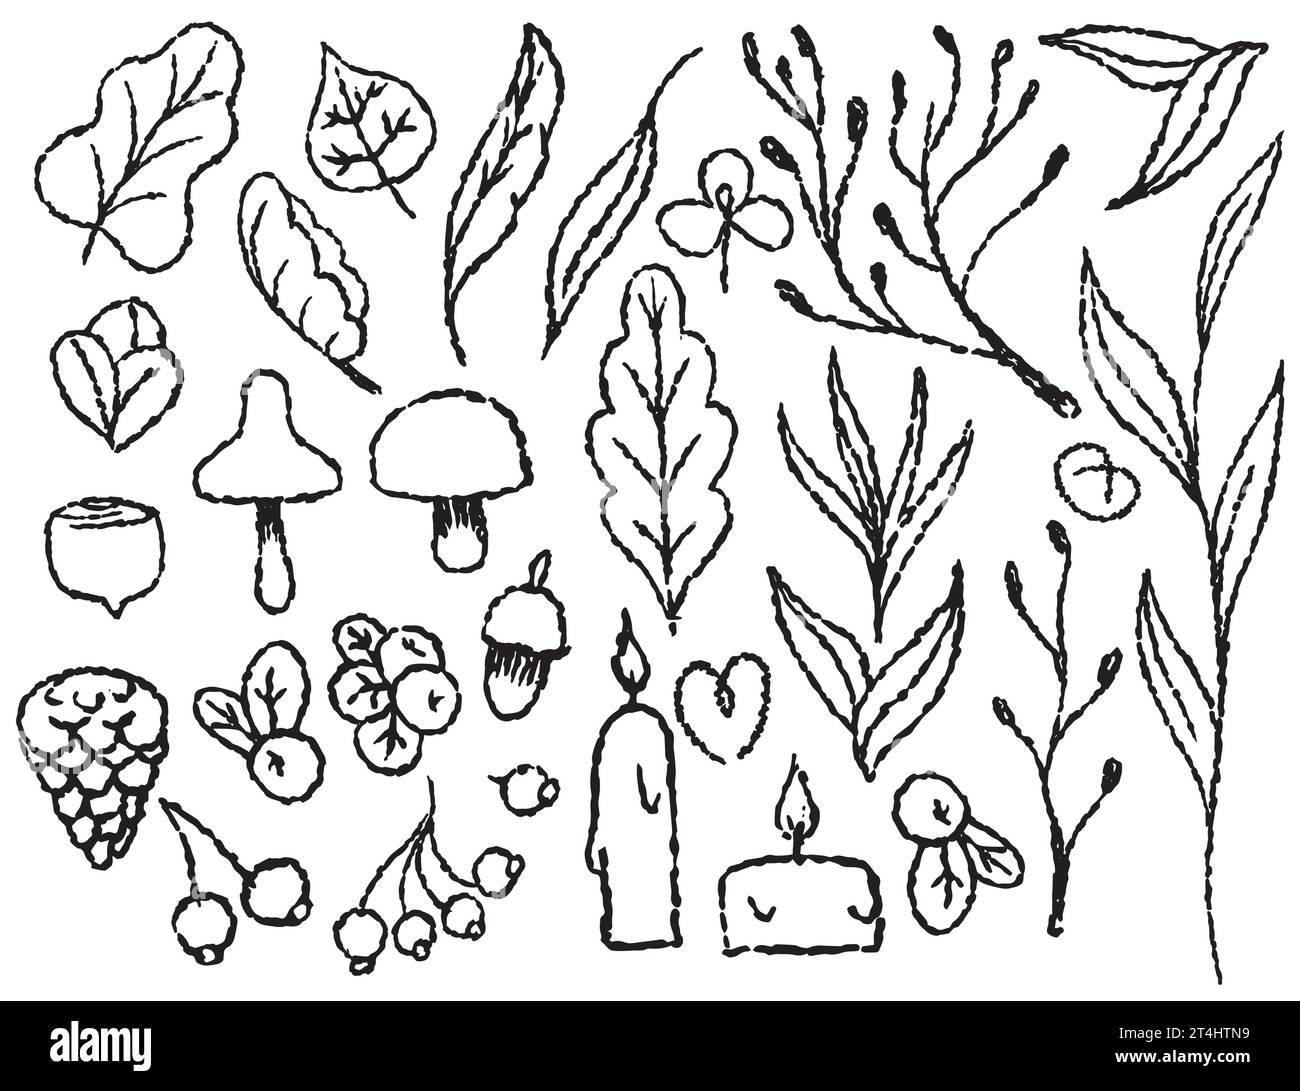 Automne Set doodle d'éléments d'automne sur un fond transparent, ligne dessinée avec un pinceau, pour l'emballage et le design textile. Feuilles, champignons, berri Illustration de Vecteur